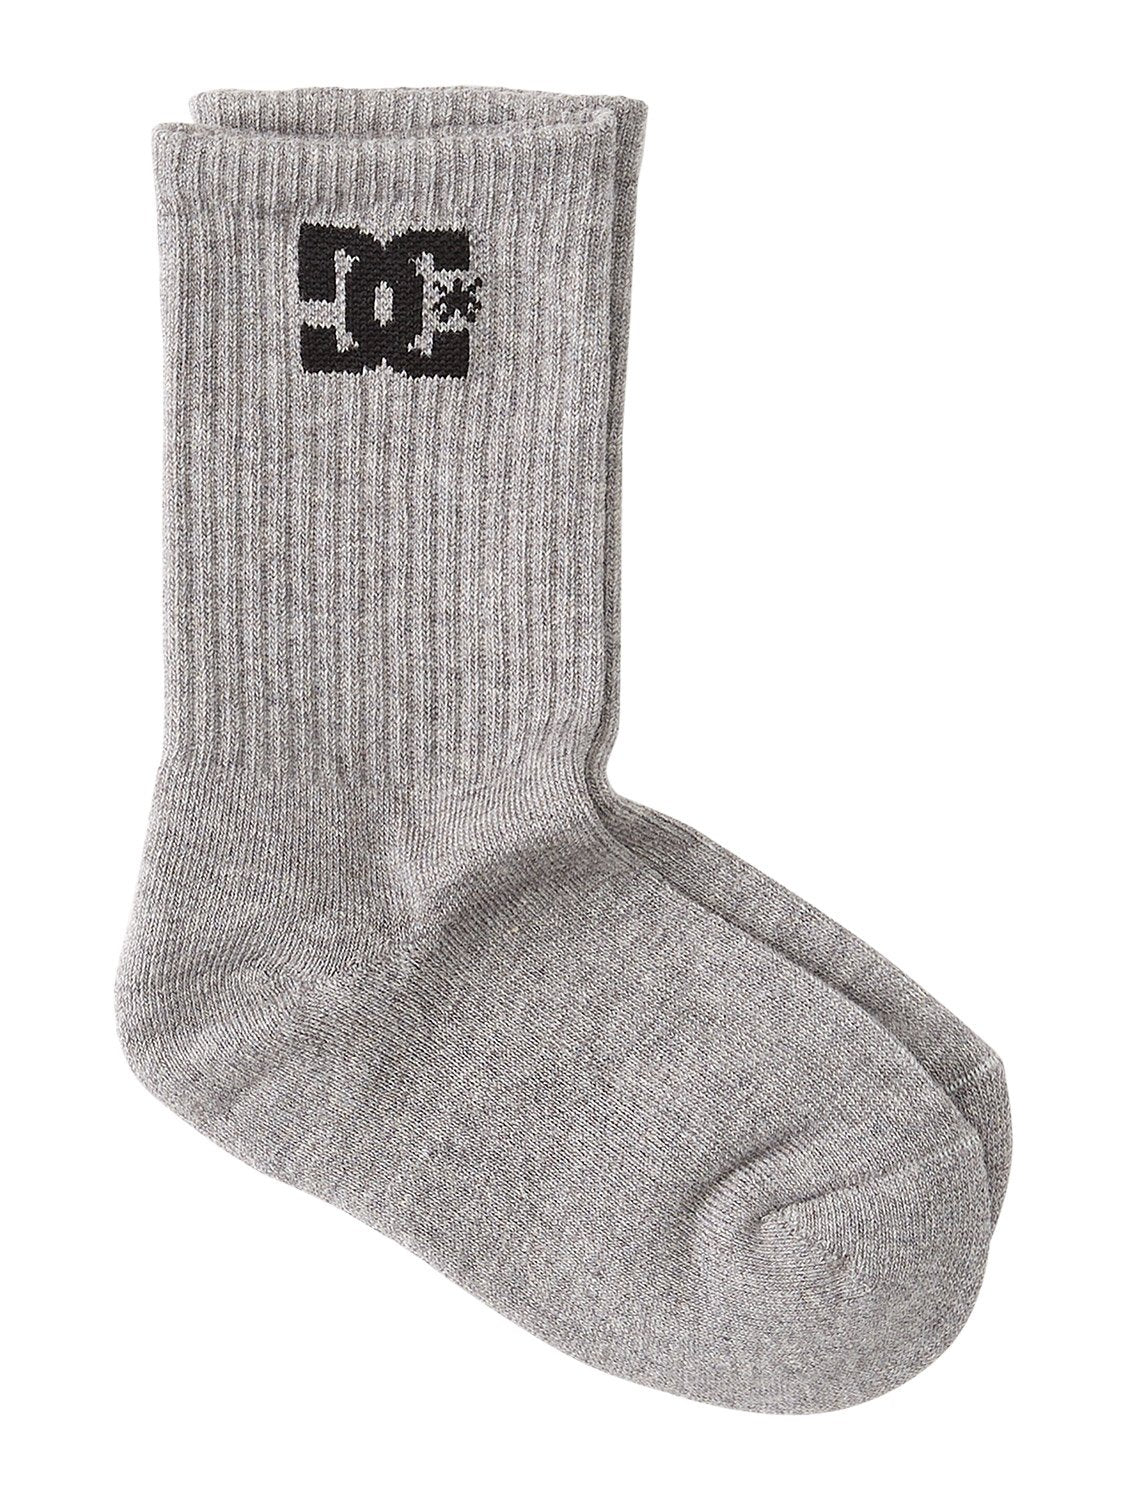 DC Men's Crew 3 Pack Socks